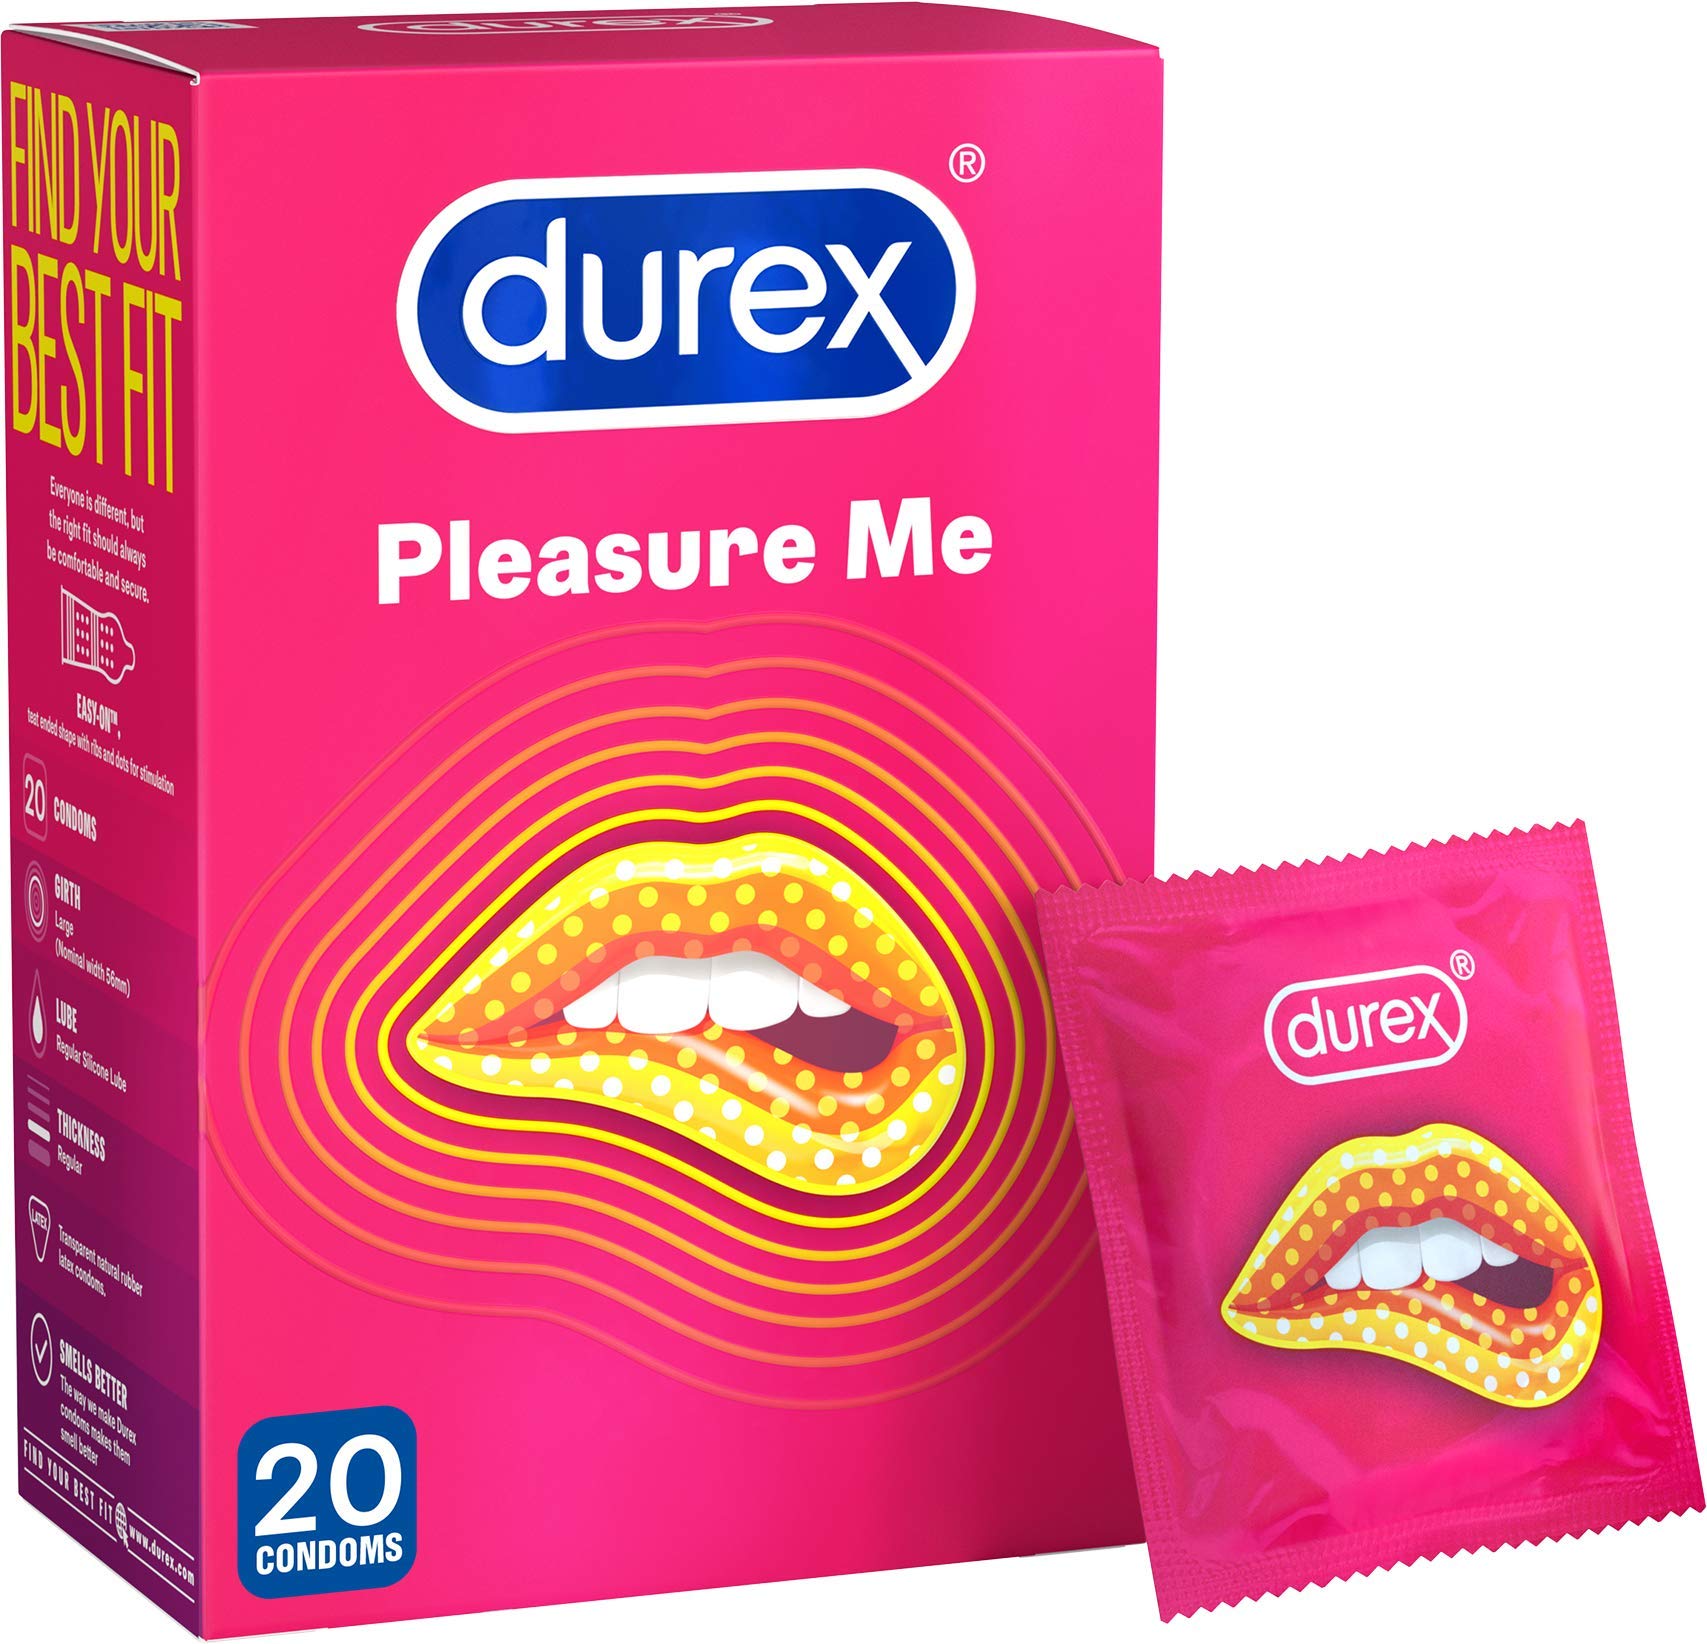 Durex Pleasure Me Condoms, 20 Condoms (1 Pack) (Packaging May Vary)